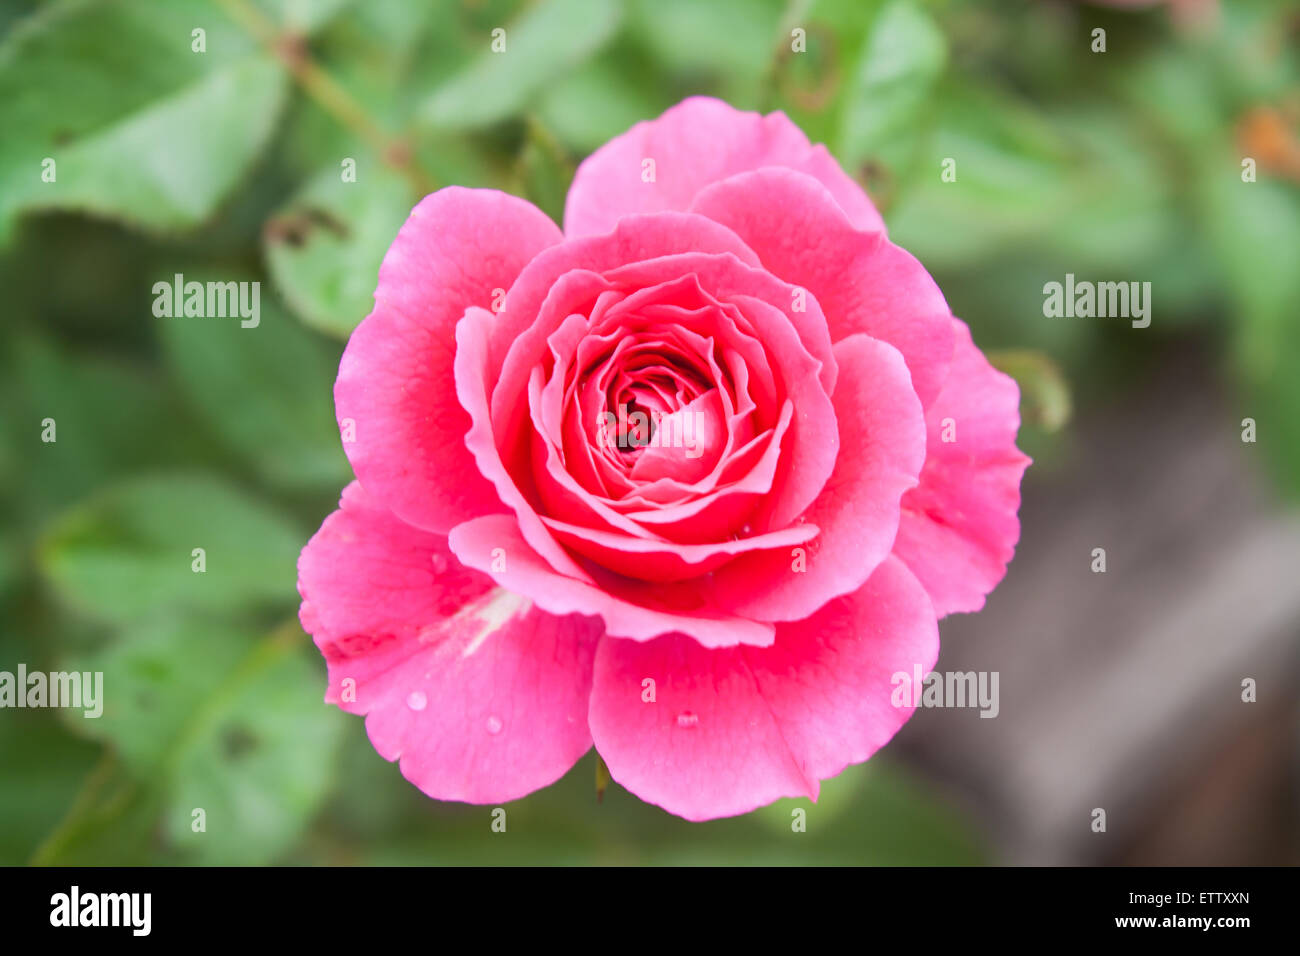 Belle fleur rose rose (Rosa sp.) dans un parc Banque D'Images